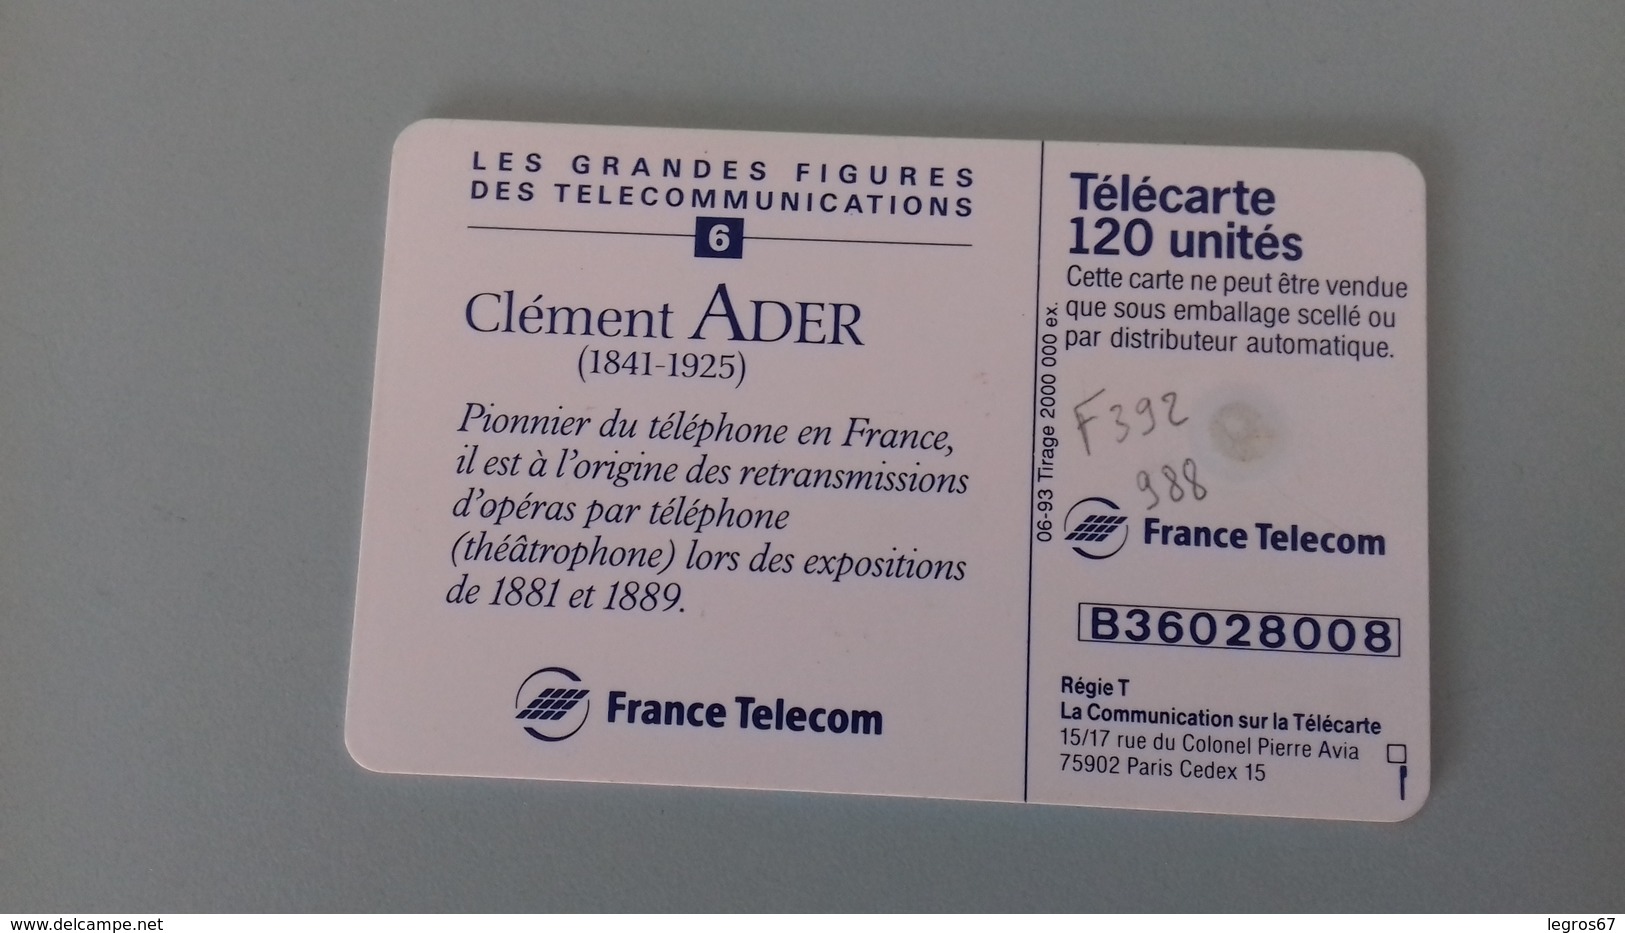 TELECARTE F 392 988 - ADER FIGURES TELECOM 6 - 120 Unidades